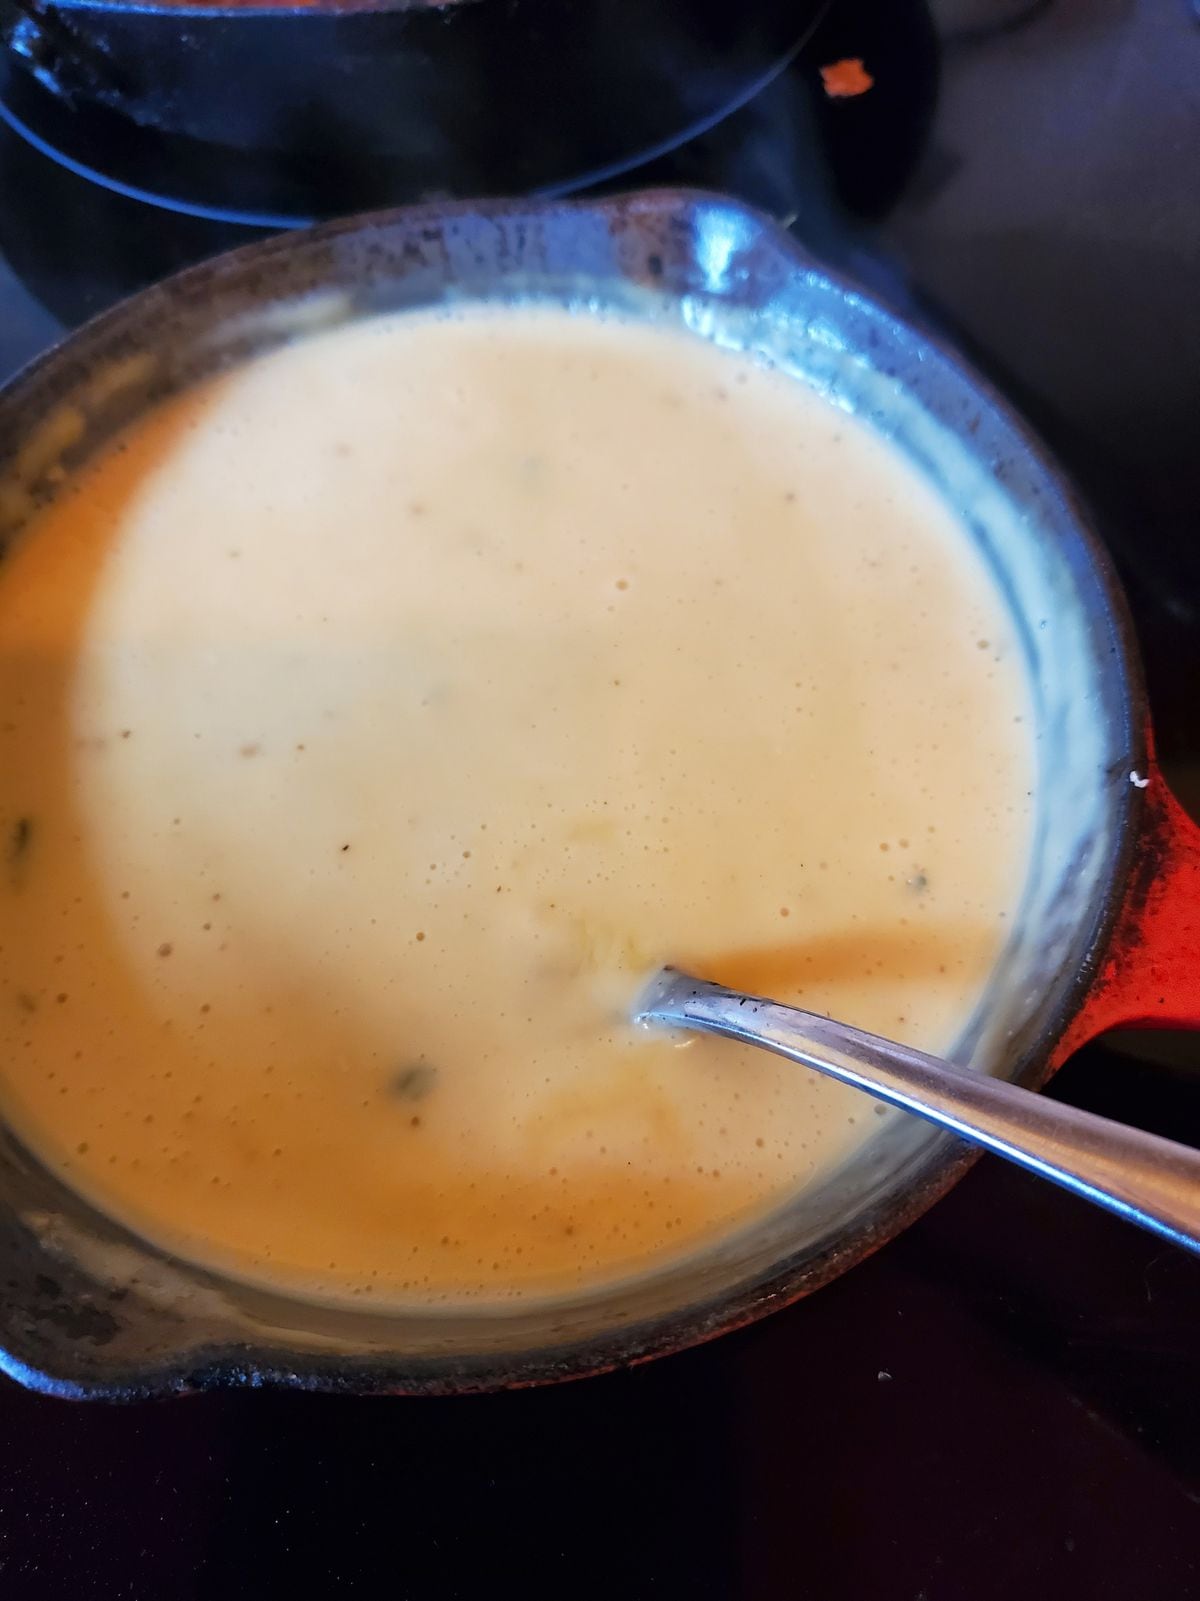 A creamy cheese sauce